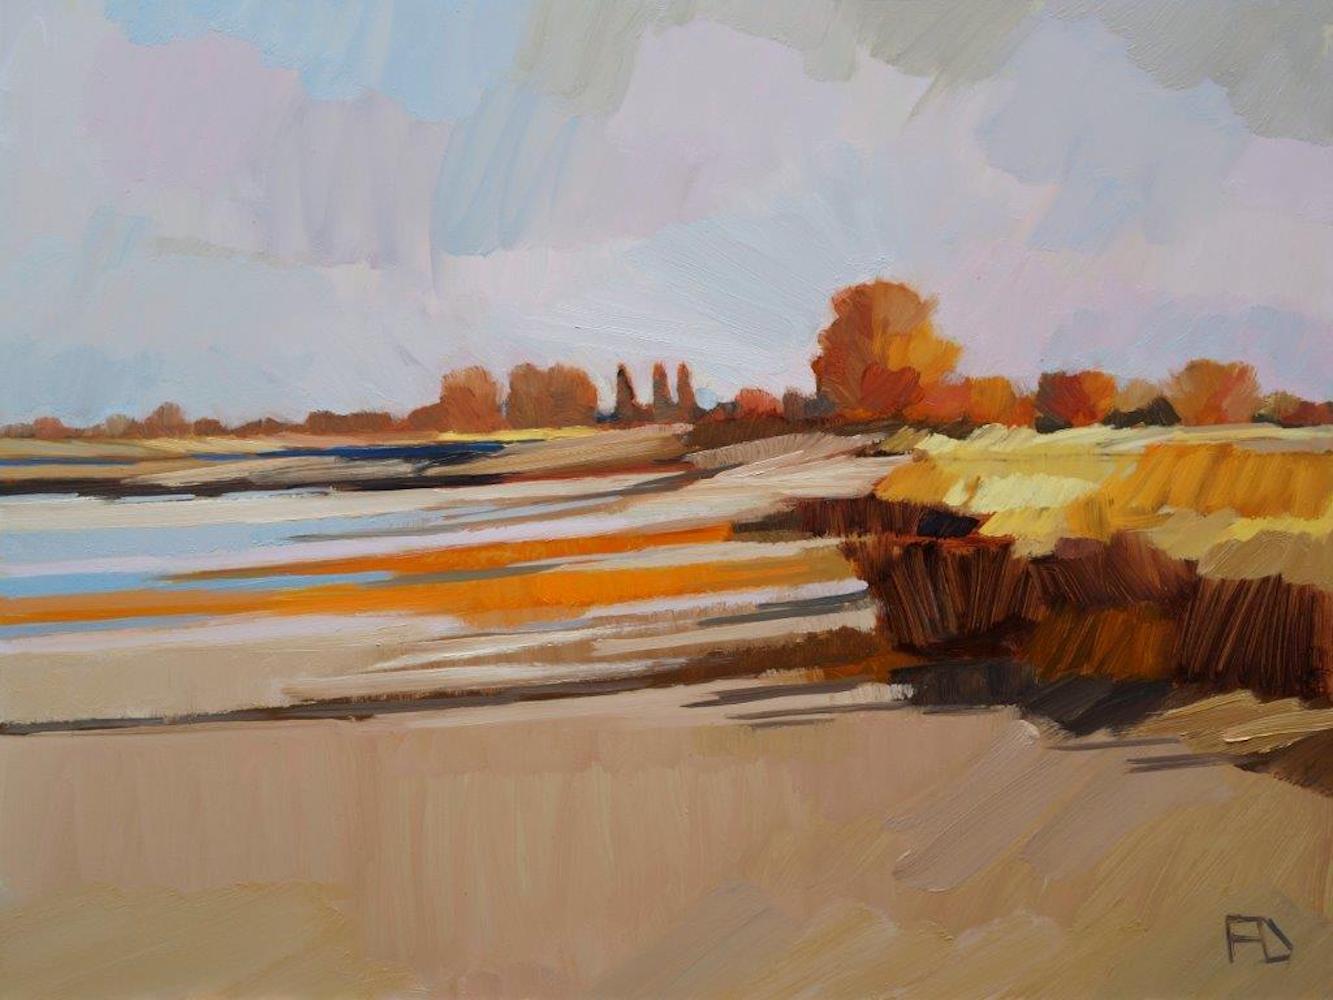 Landscape Painting Frank Dekkers - « Low Tide », peinture à l'huile contemporaine néerlandaise d'un paysage